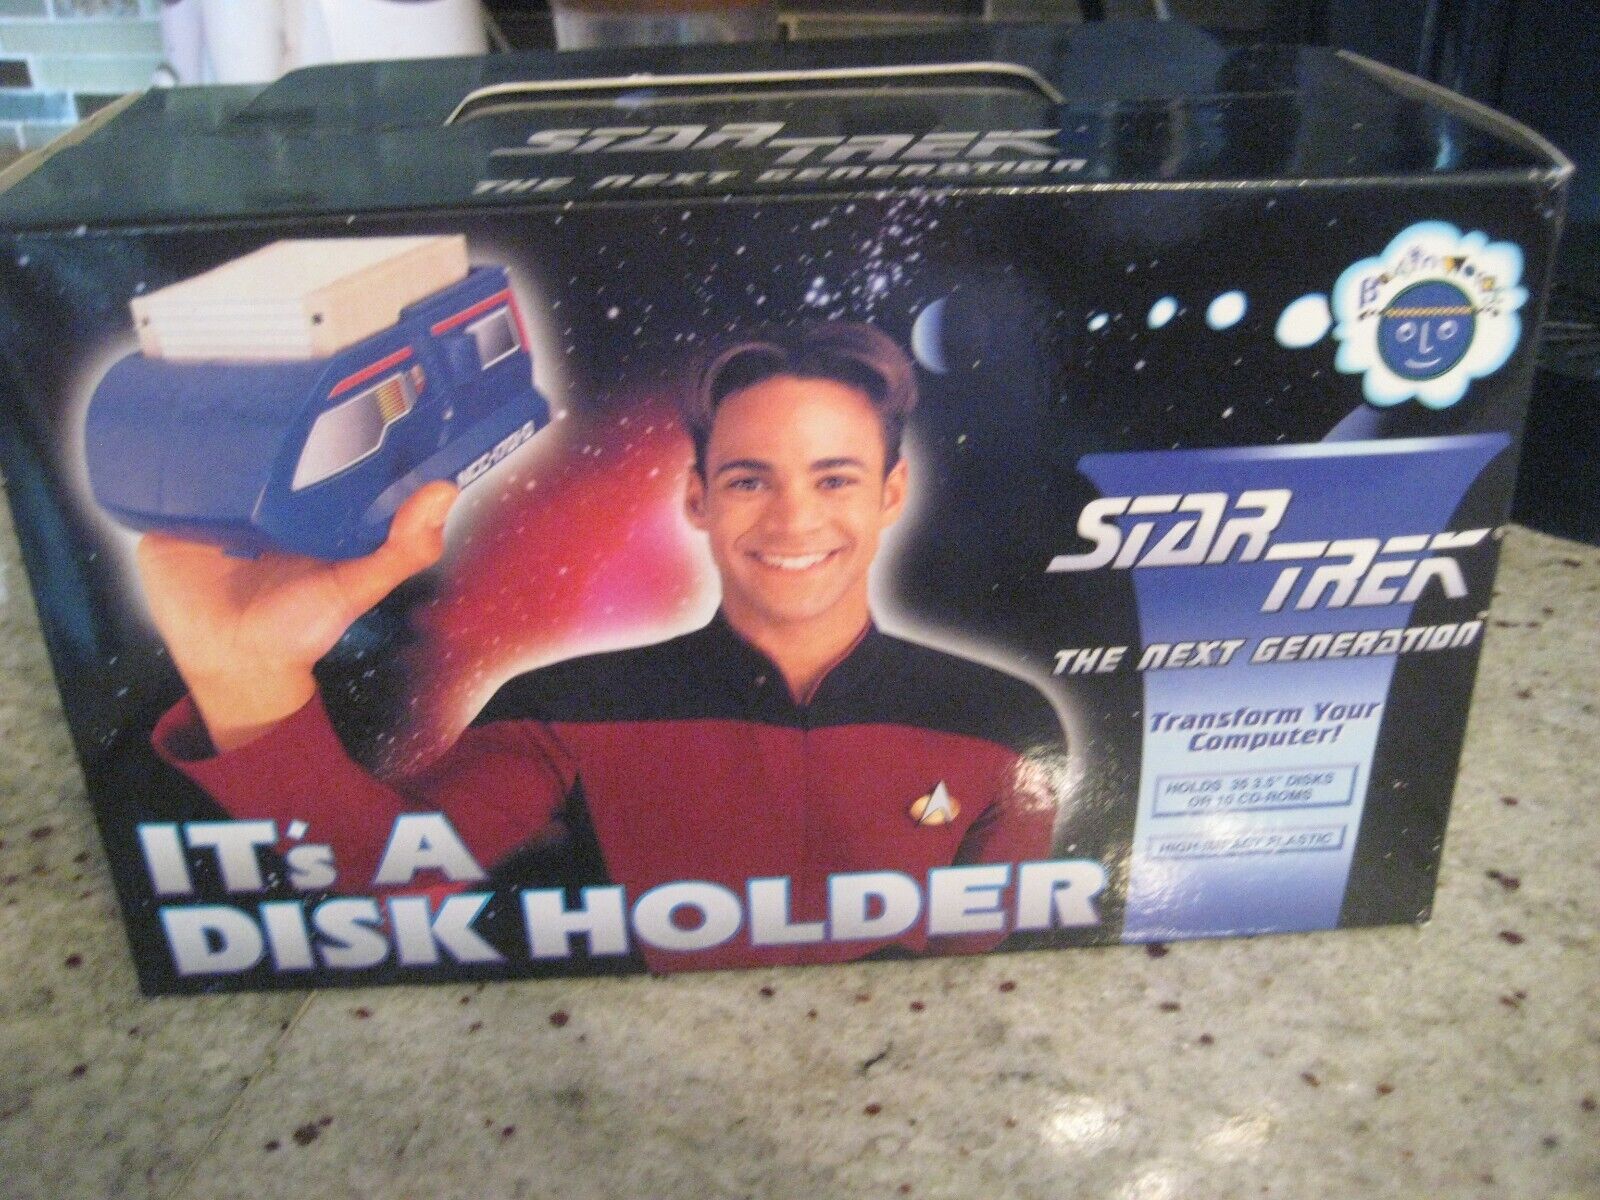 1995 Star Trek Next Generation Computer 3.5" Disk/CD-Rom Holder